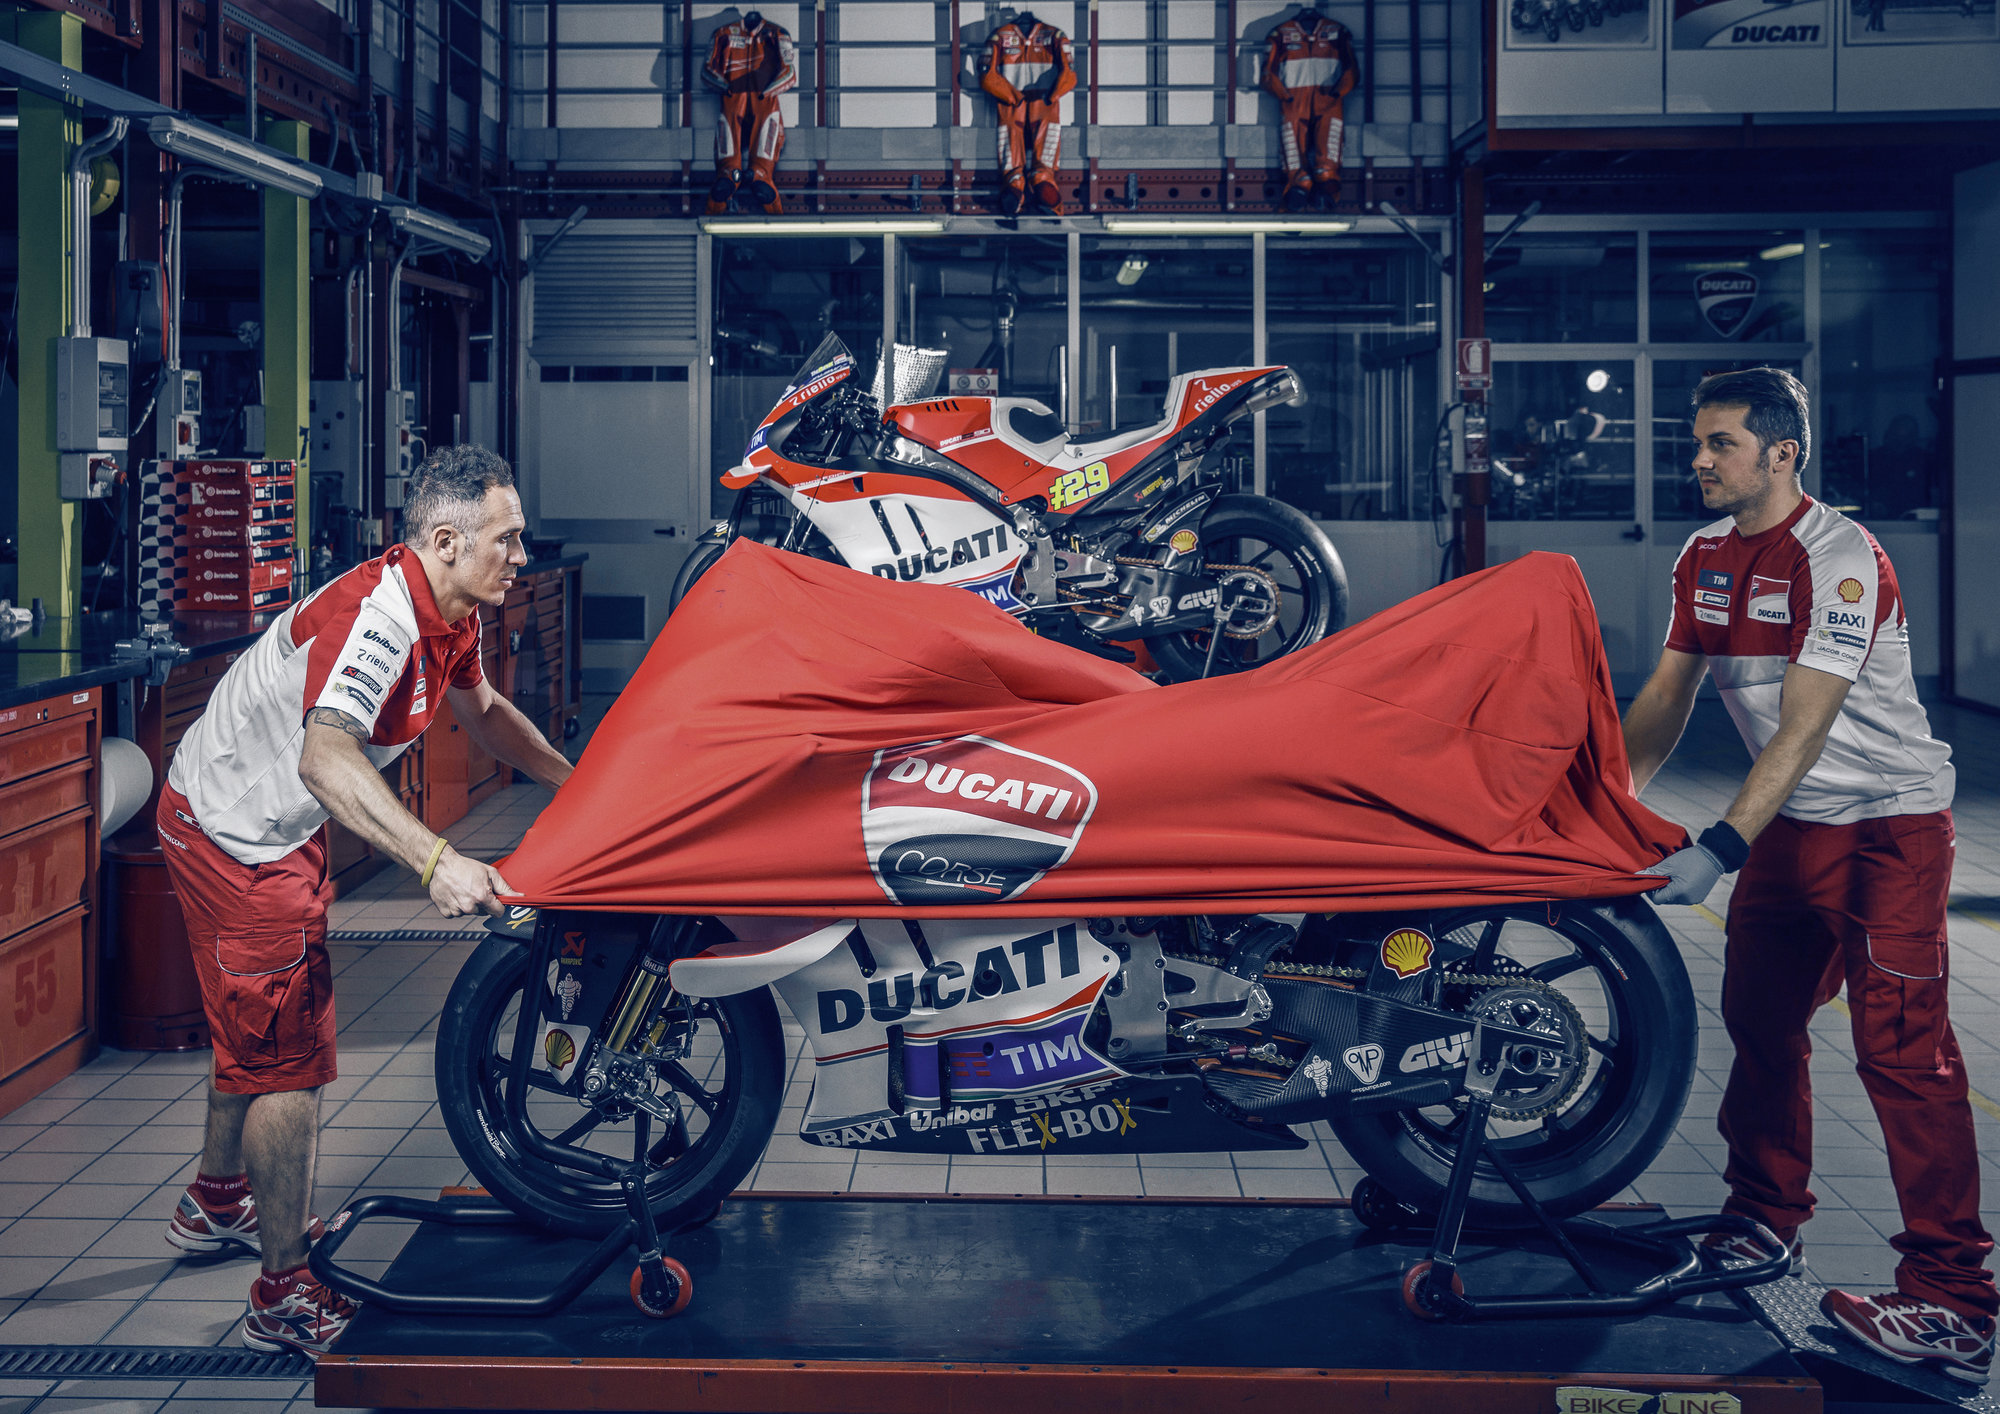 Historie společnosti Ducati sahá až do roku 1926